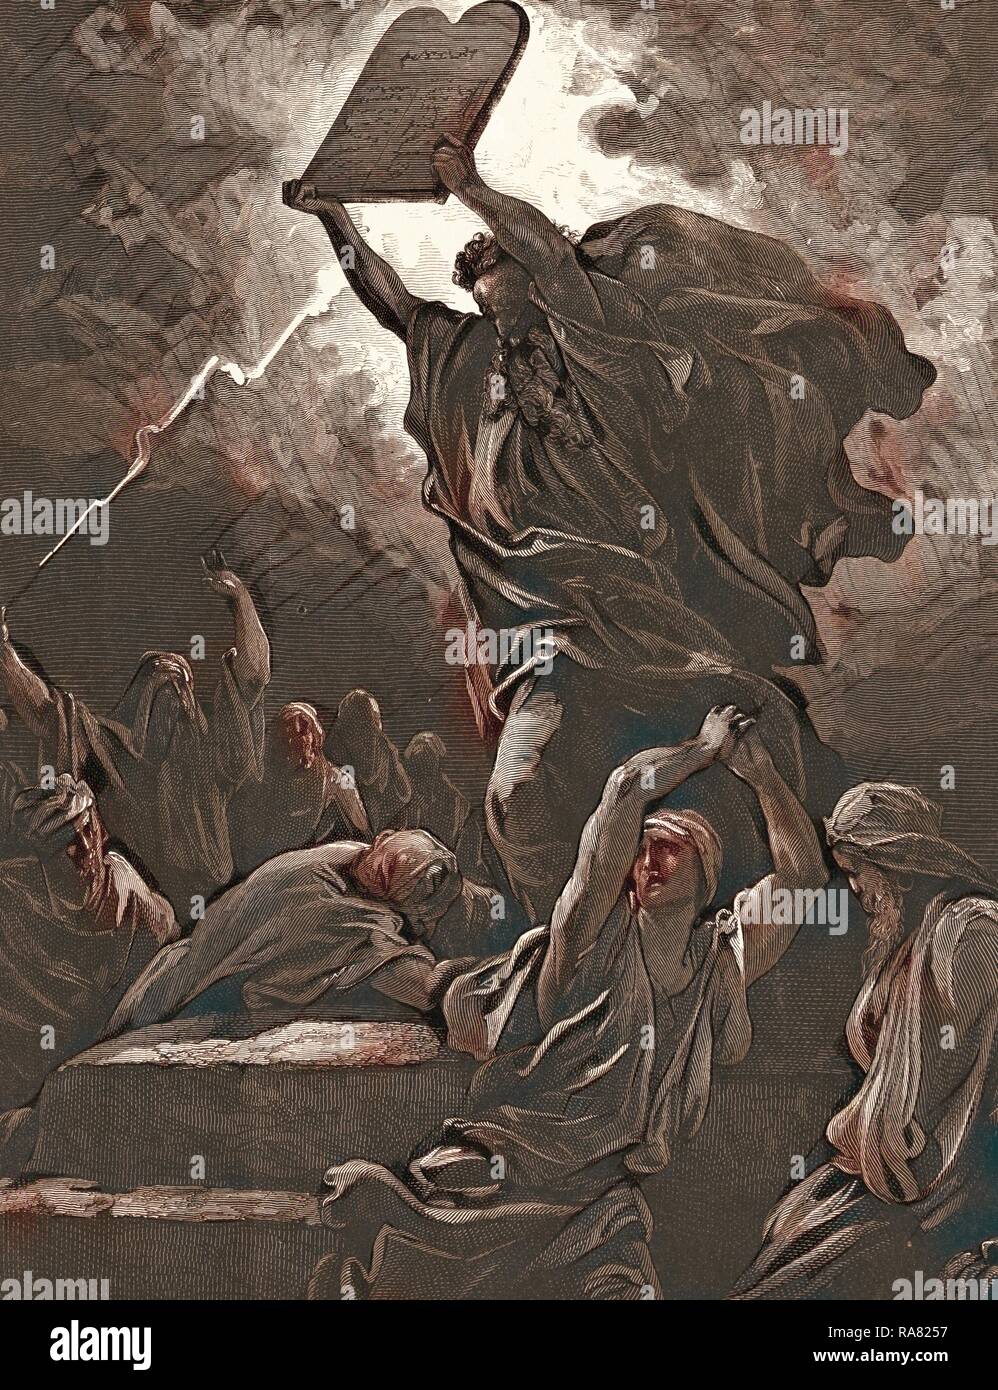 Moïse brisant les tables de la loi, par Gustave Doré, 1832 - 1883, Français. Gravure pour la Bible. 1870, l'Art repensé Banque D'Images